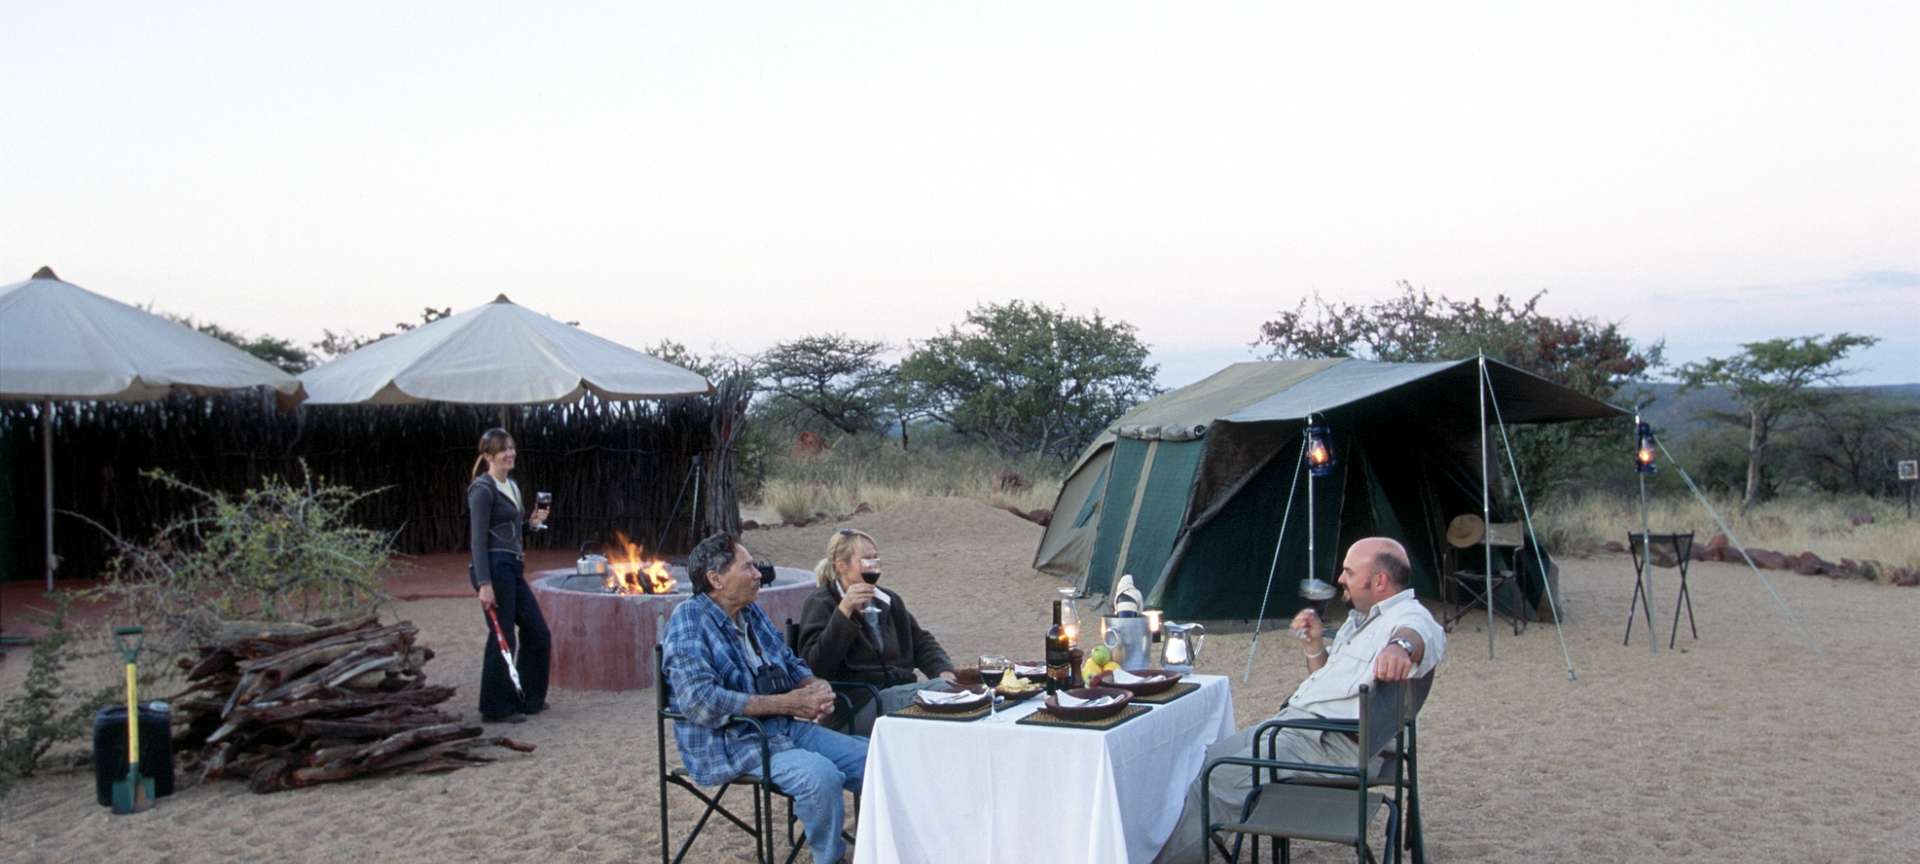 camping namibia